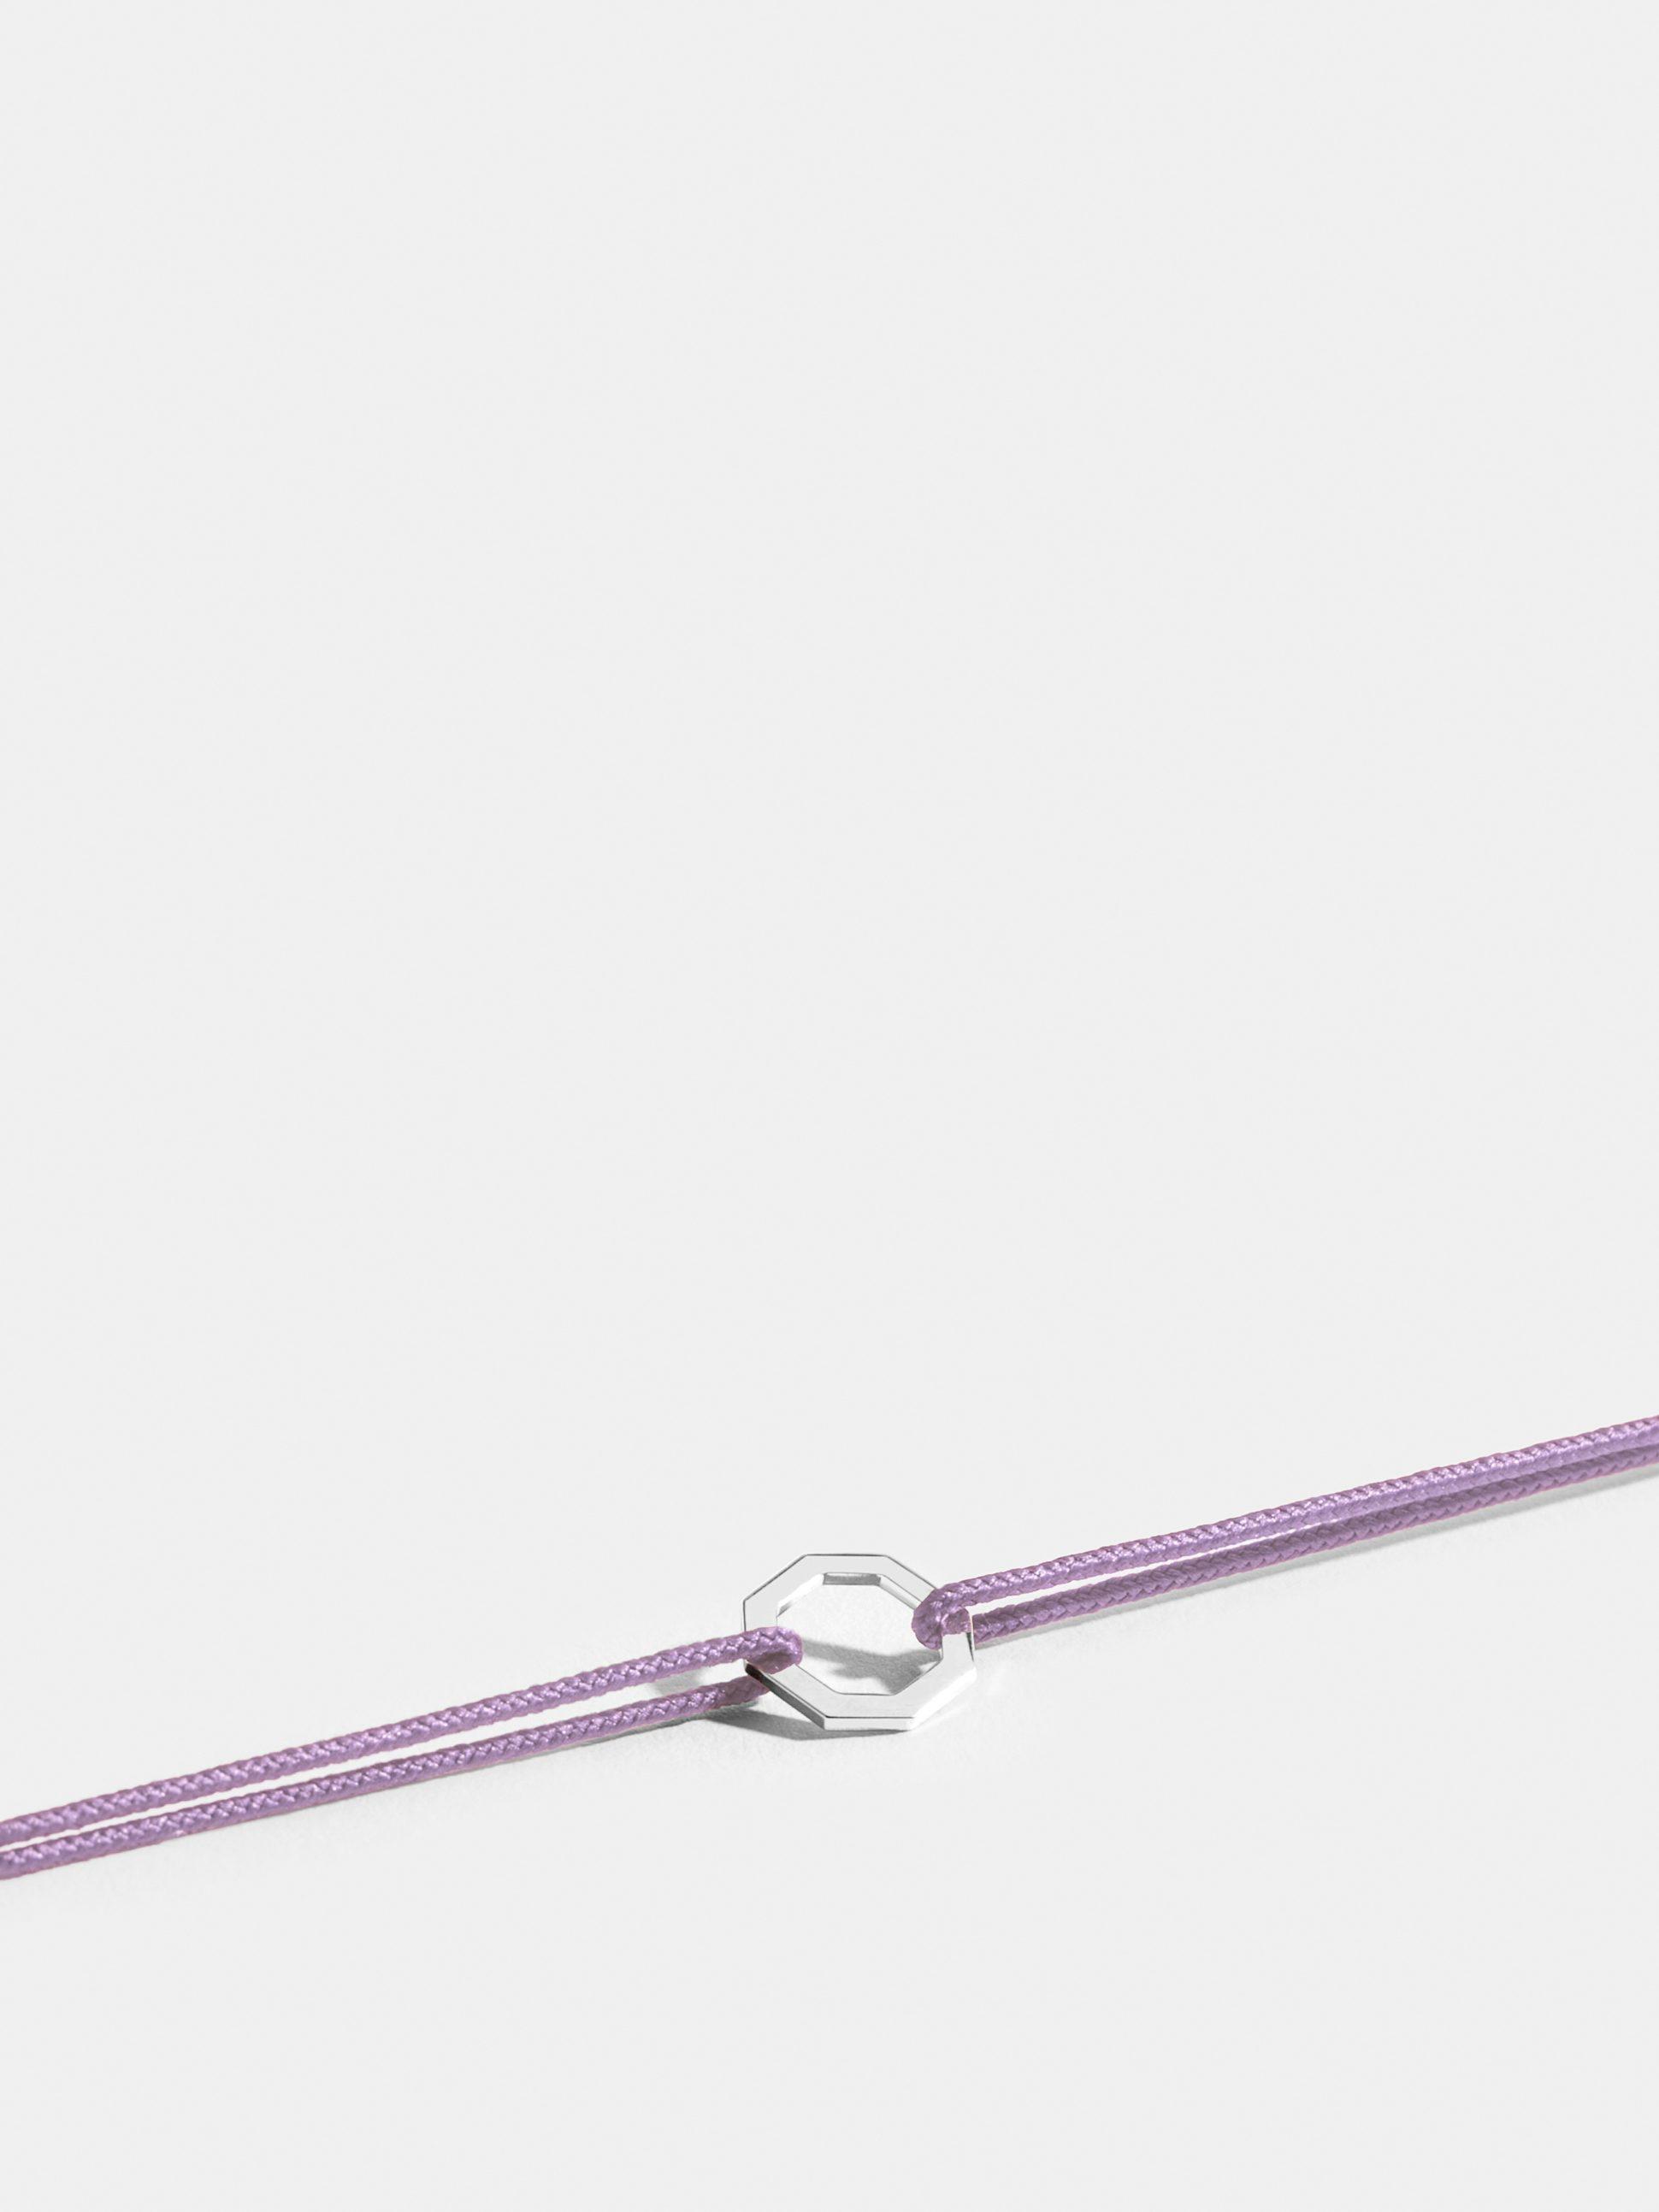 Motif Octogone en Or blanc éthique 18 carats certifié Fairmined, sur cordon violet lilas.